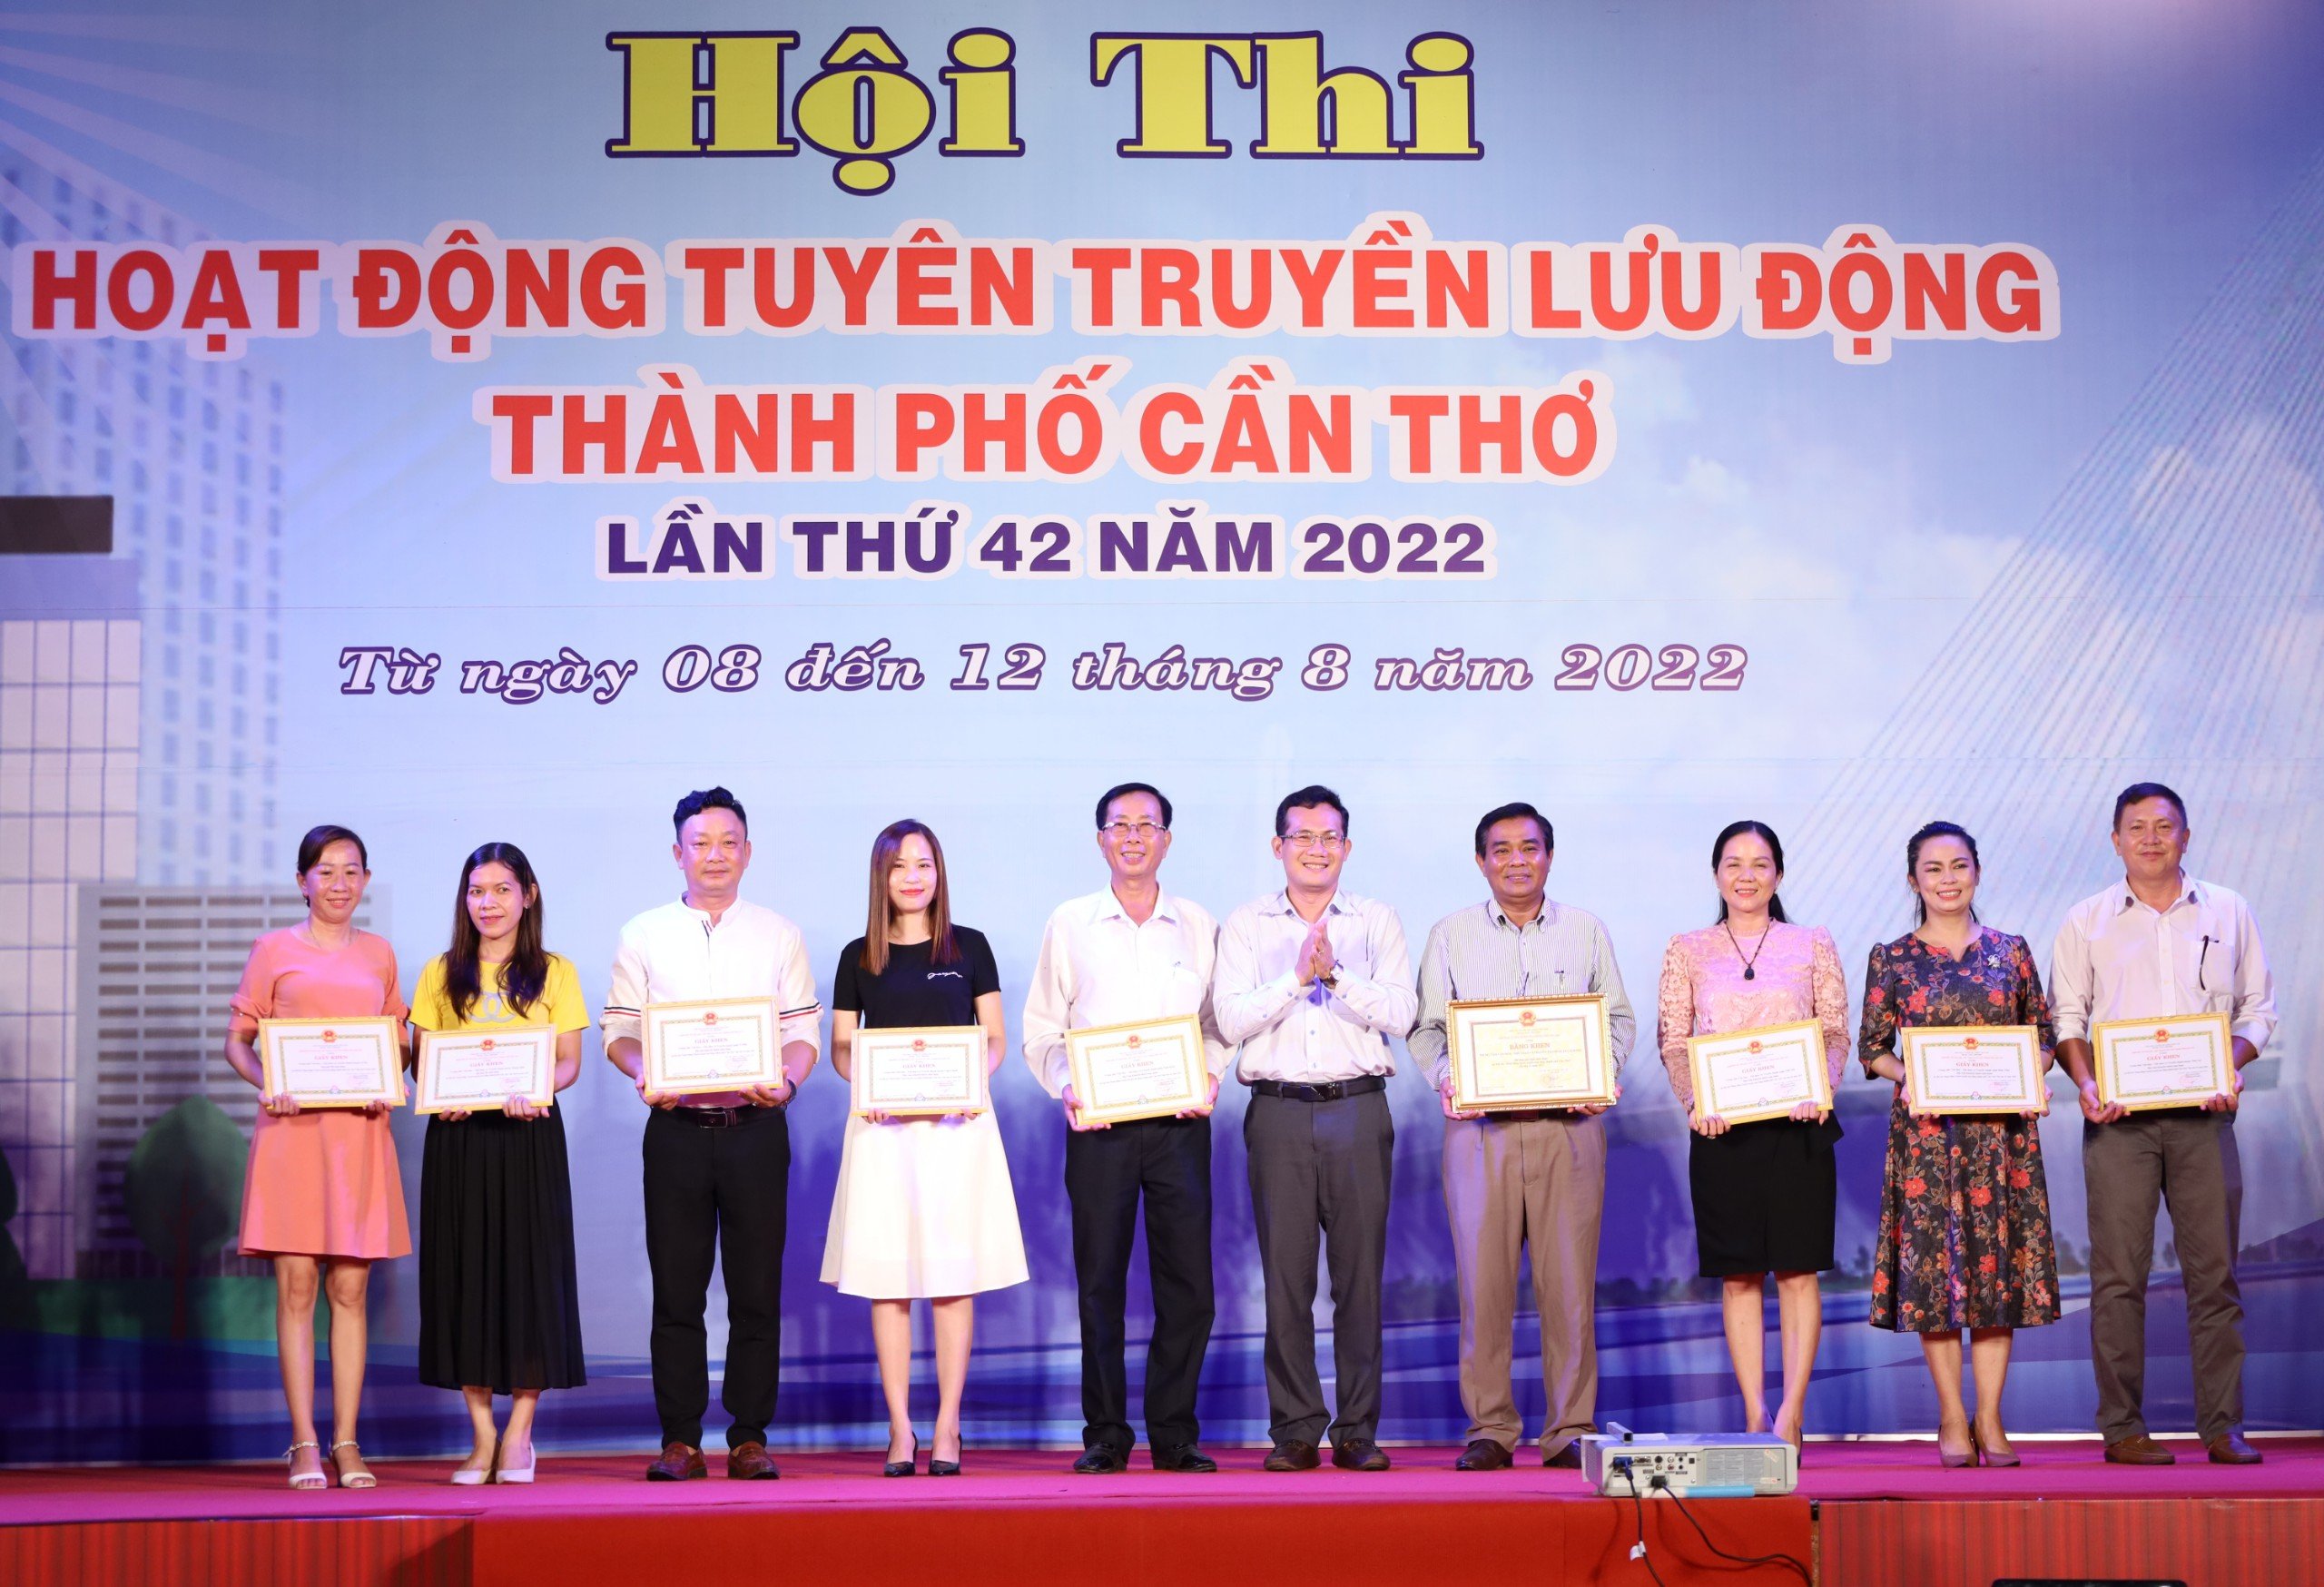 Ông Nguyễn Minh Tuấn - Phó Giám đốc phụ trách Sở Văn hóa, Thể thao và Du lịch TP. Cần Thơ trao giải cho các đơn vị đạt giải toàn đoàn.